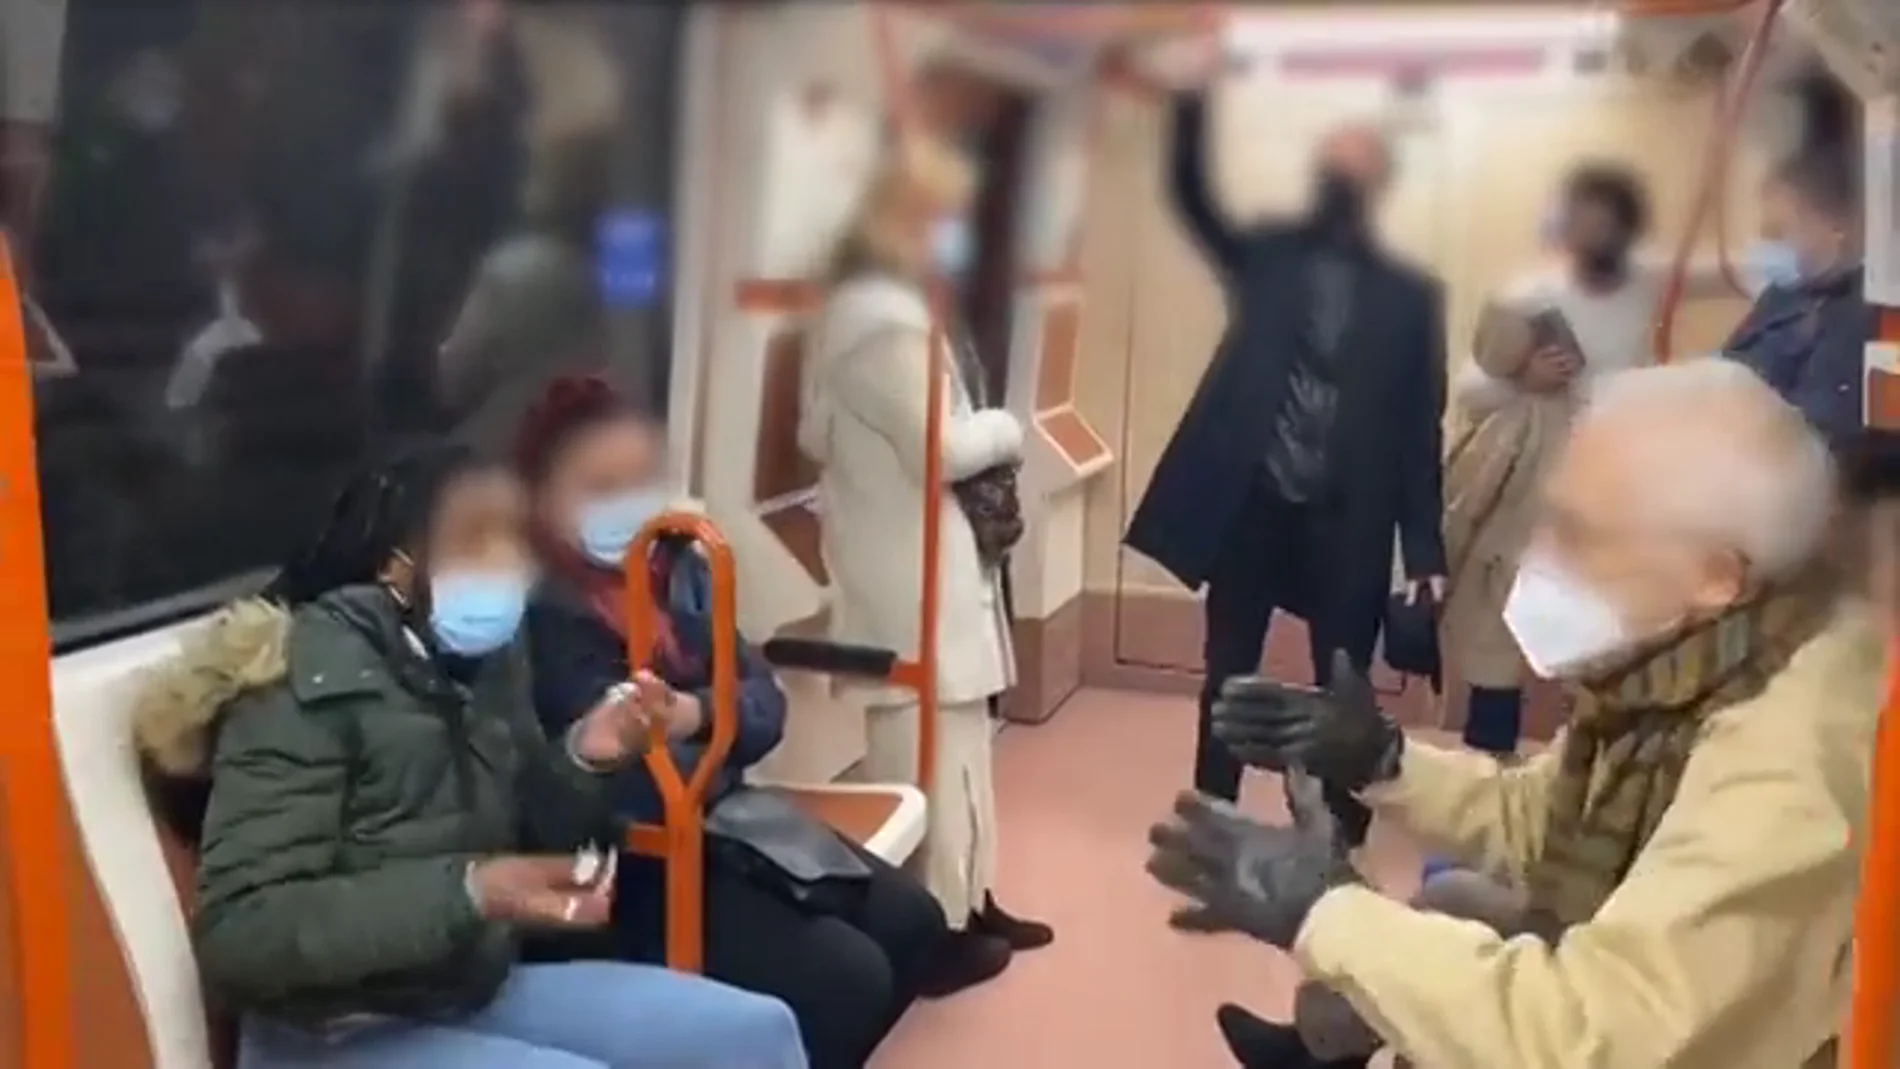 "¡Tápese la nariz, coño!": bronca en el Metro de Madrid por una mascarilla mal puesta